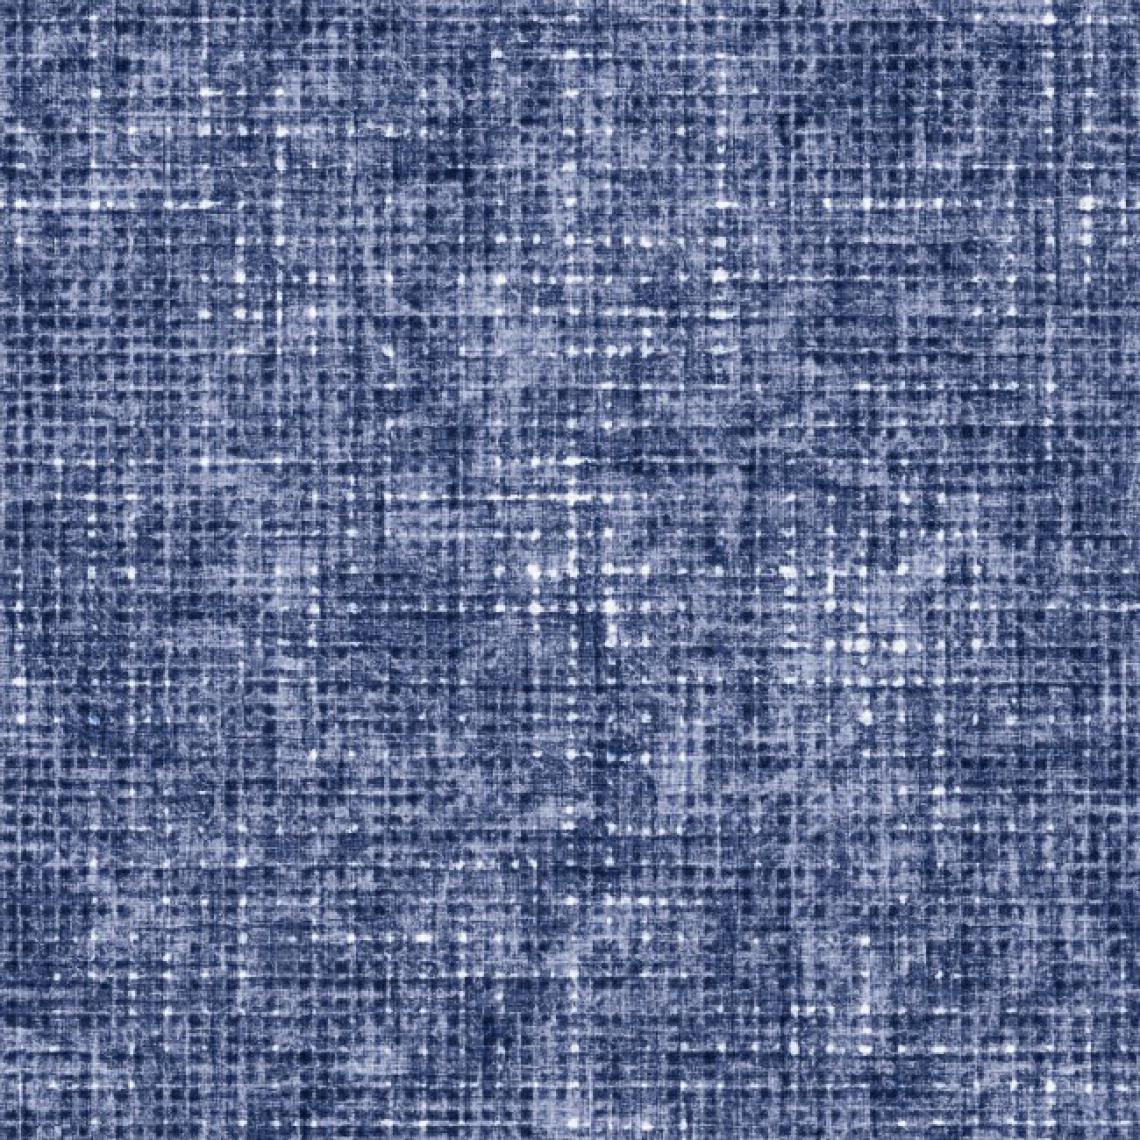 Homemania - HOMEMANIA Tapis Imprimé Shades Of Blue - Géométrique - Décoration de Maison - Antidérapant - Pour Salon, séjour, chambre à coucher - Multicolore en Polyester, Coton, 80 x 120 cm - Tapis